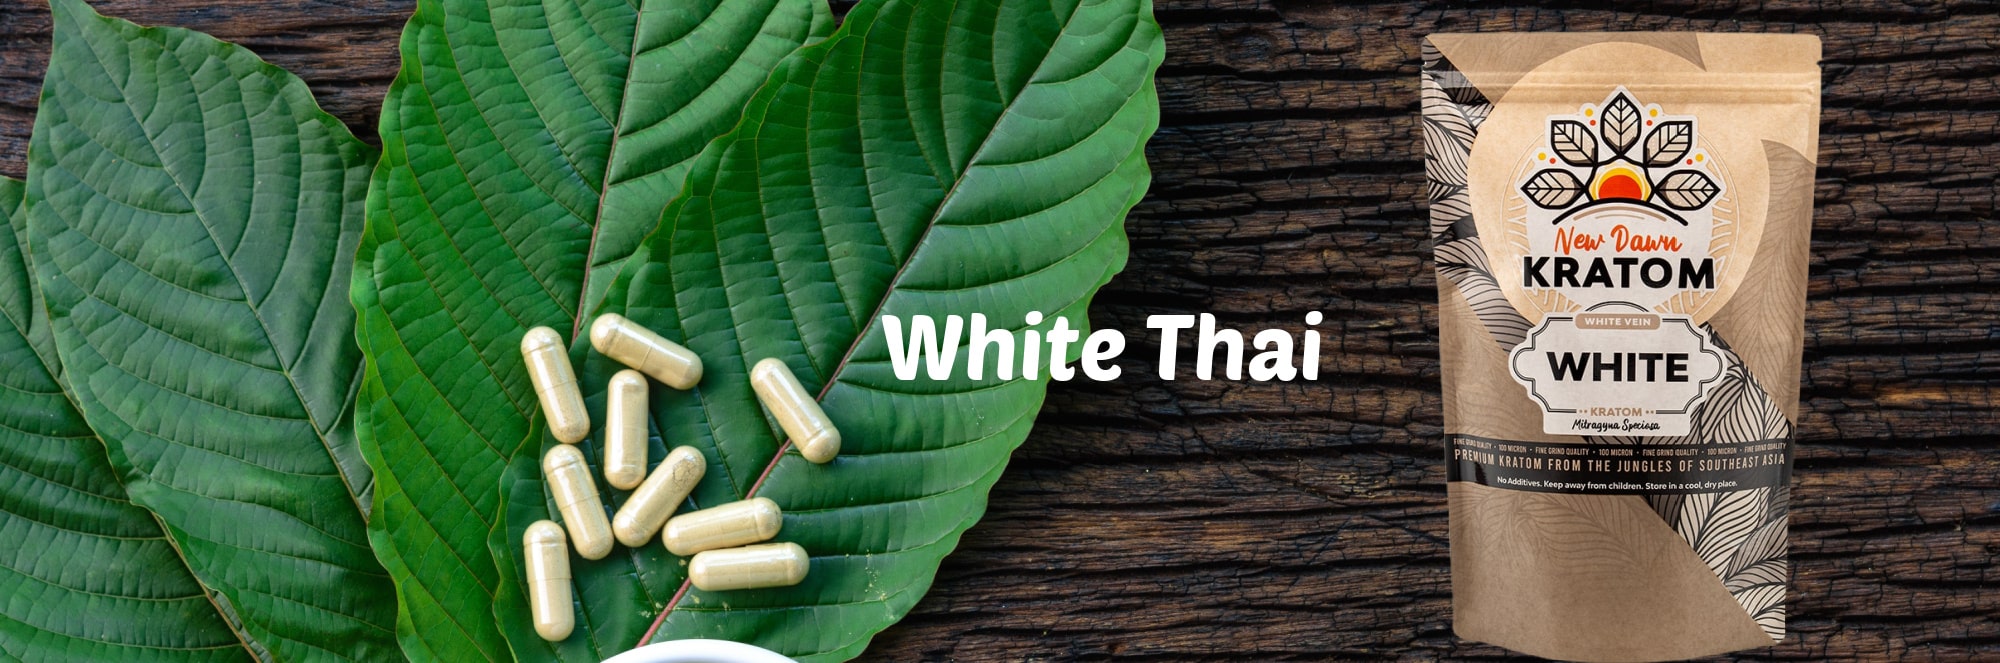 image of white thai strain for energy